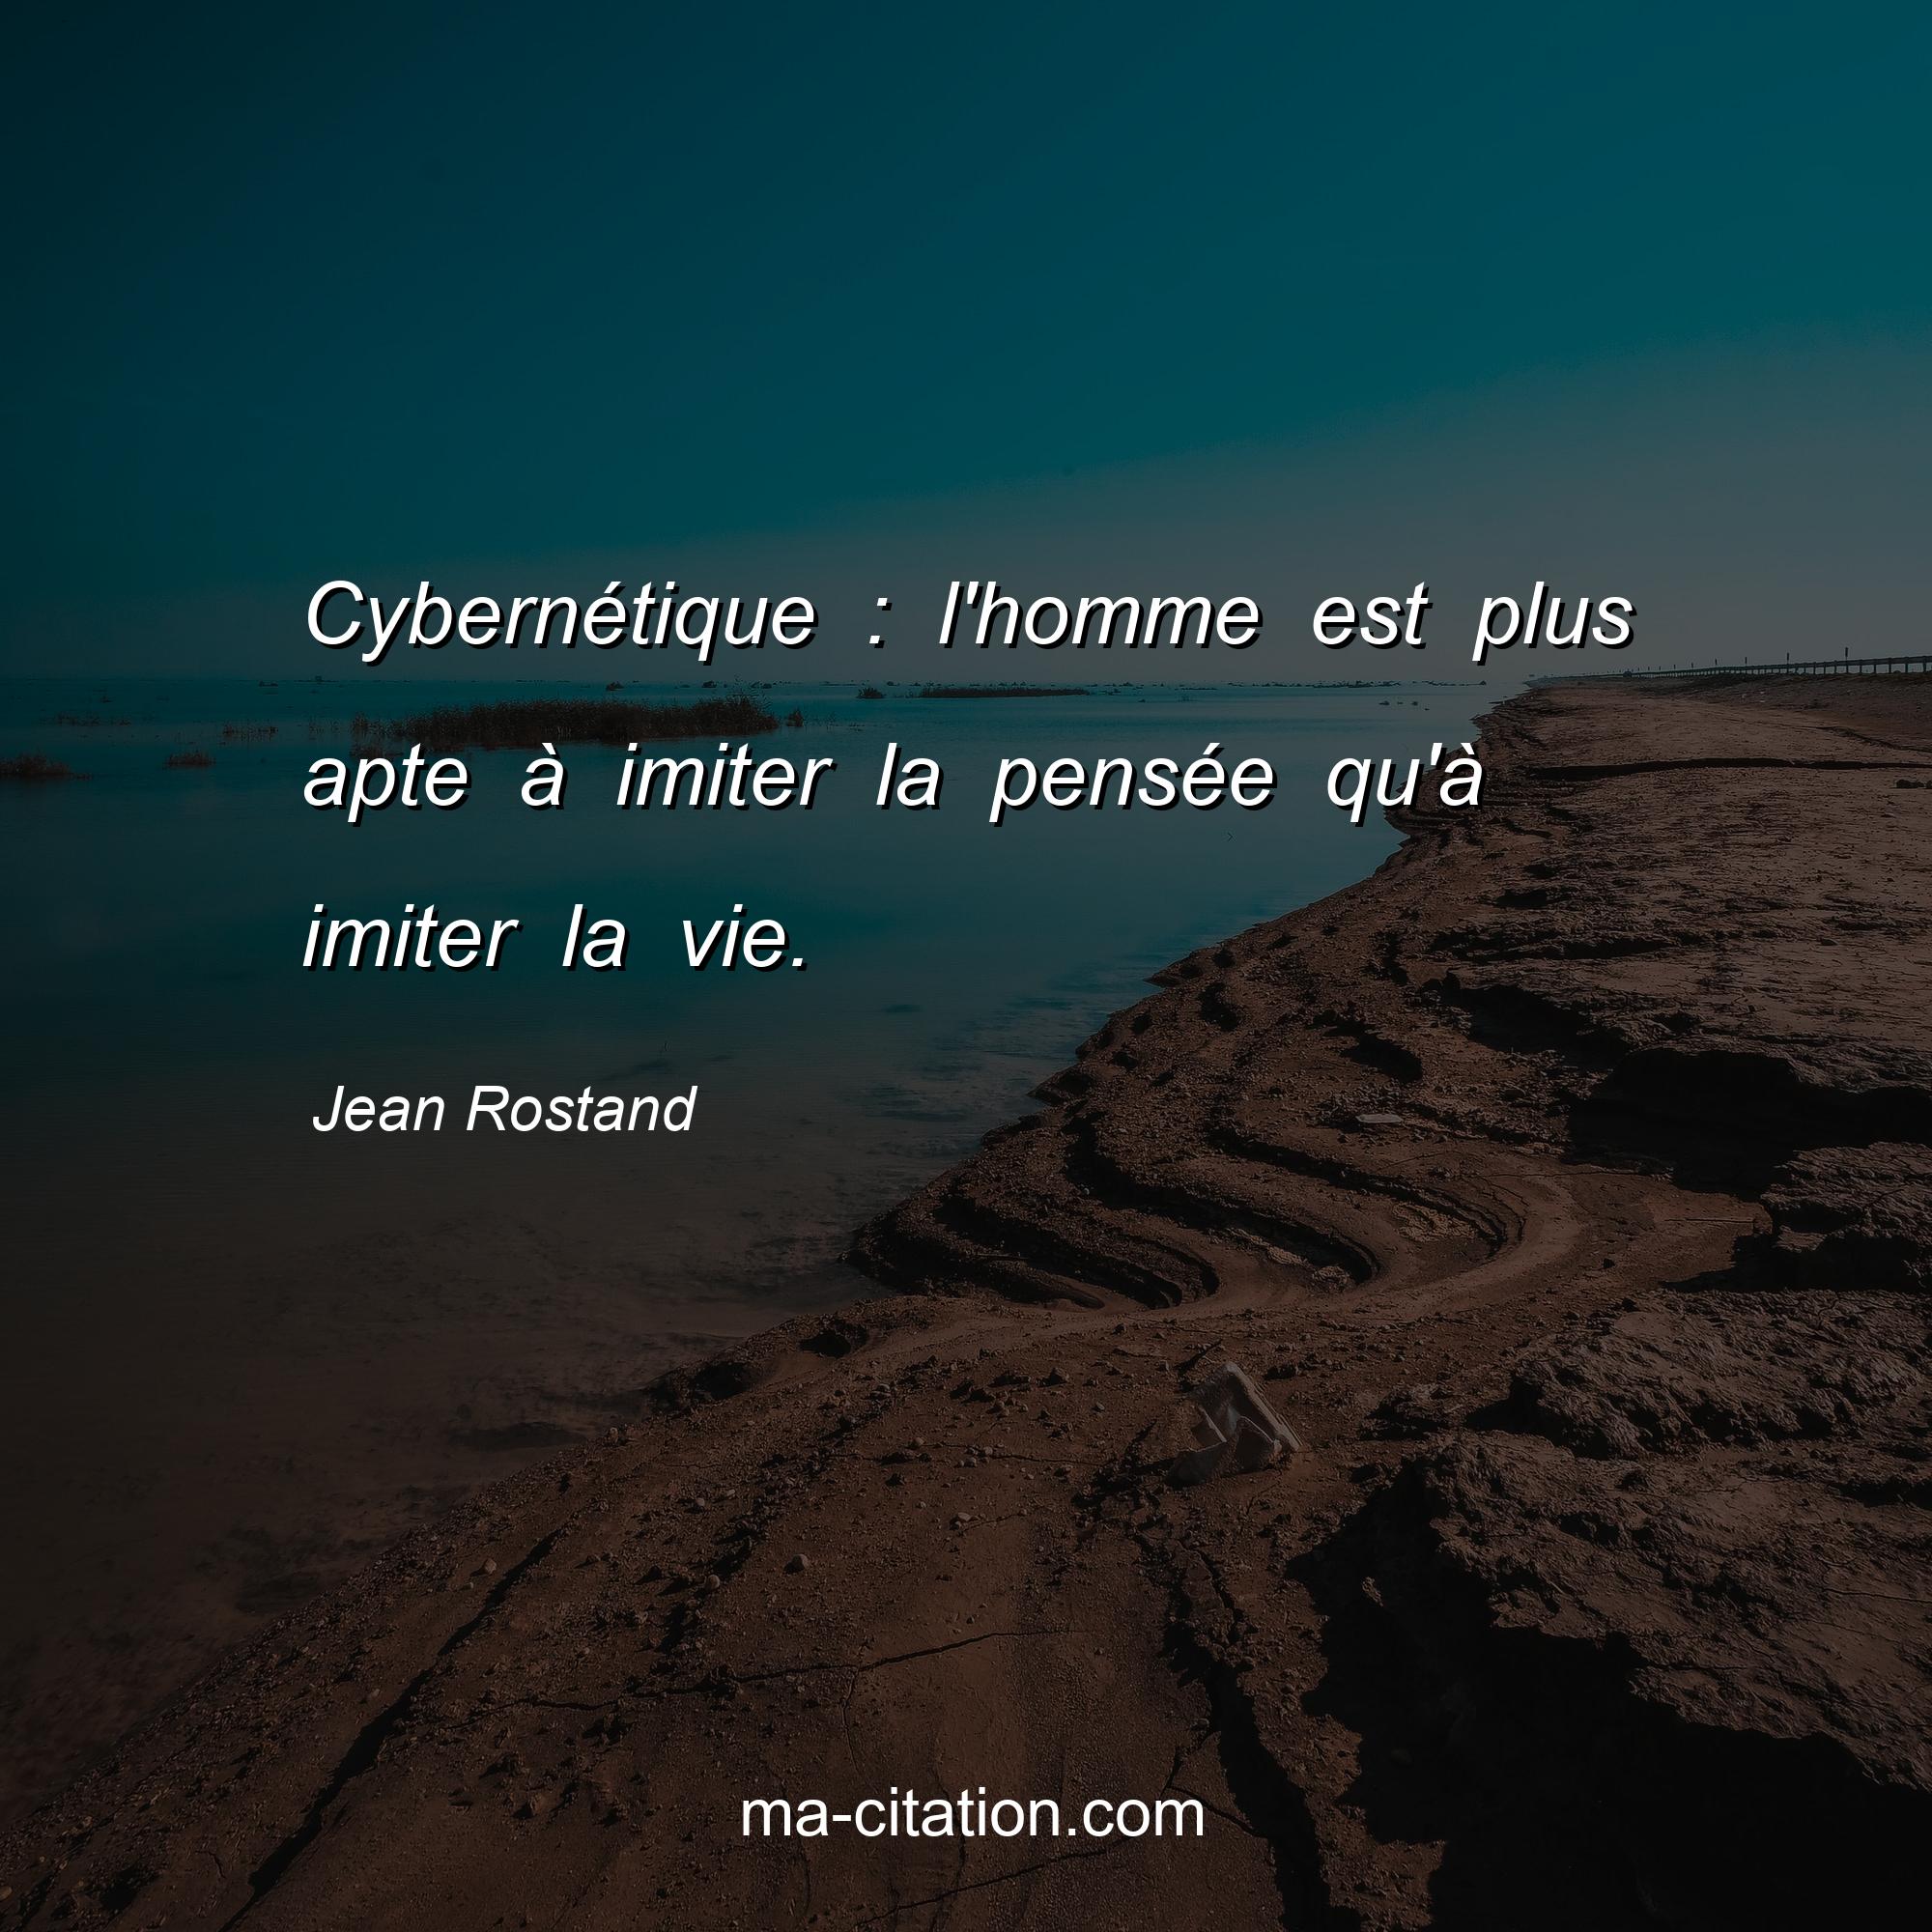 Jean Rostand : Cybernétique : l'homme est plus apte à imiter la pensée qu'à imiter la vie.